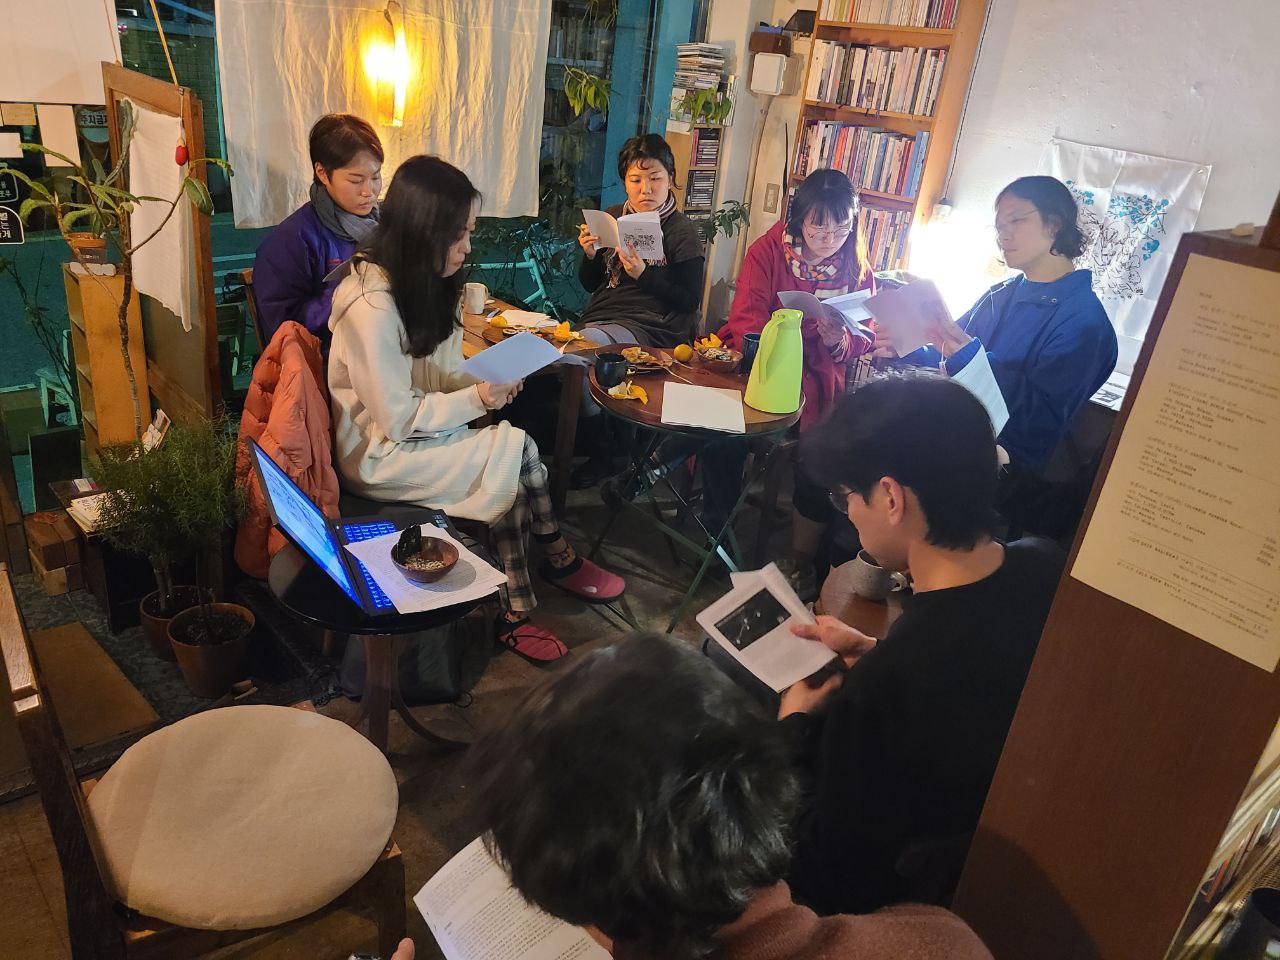 조명이 밝혀진 아늑한 실내에 여섯 명의 사람들이 각각 손에 소책자를 들고 읽고 있다. 